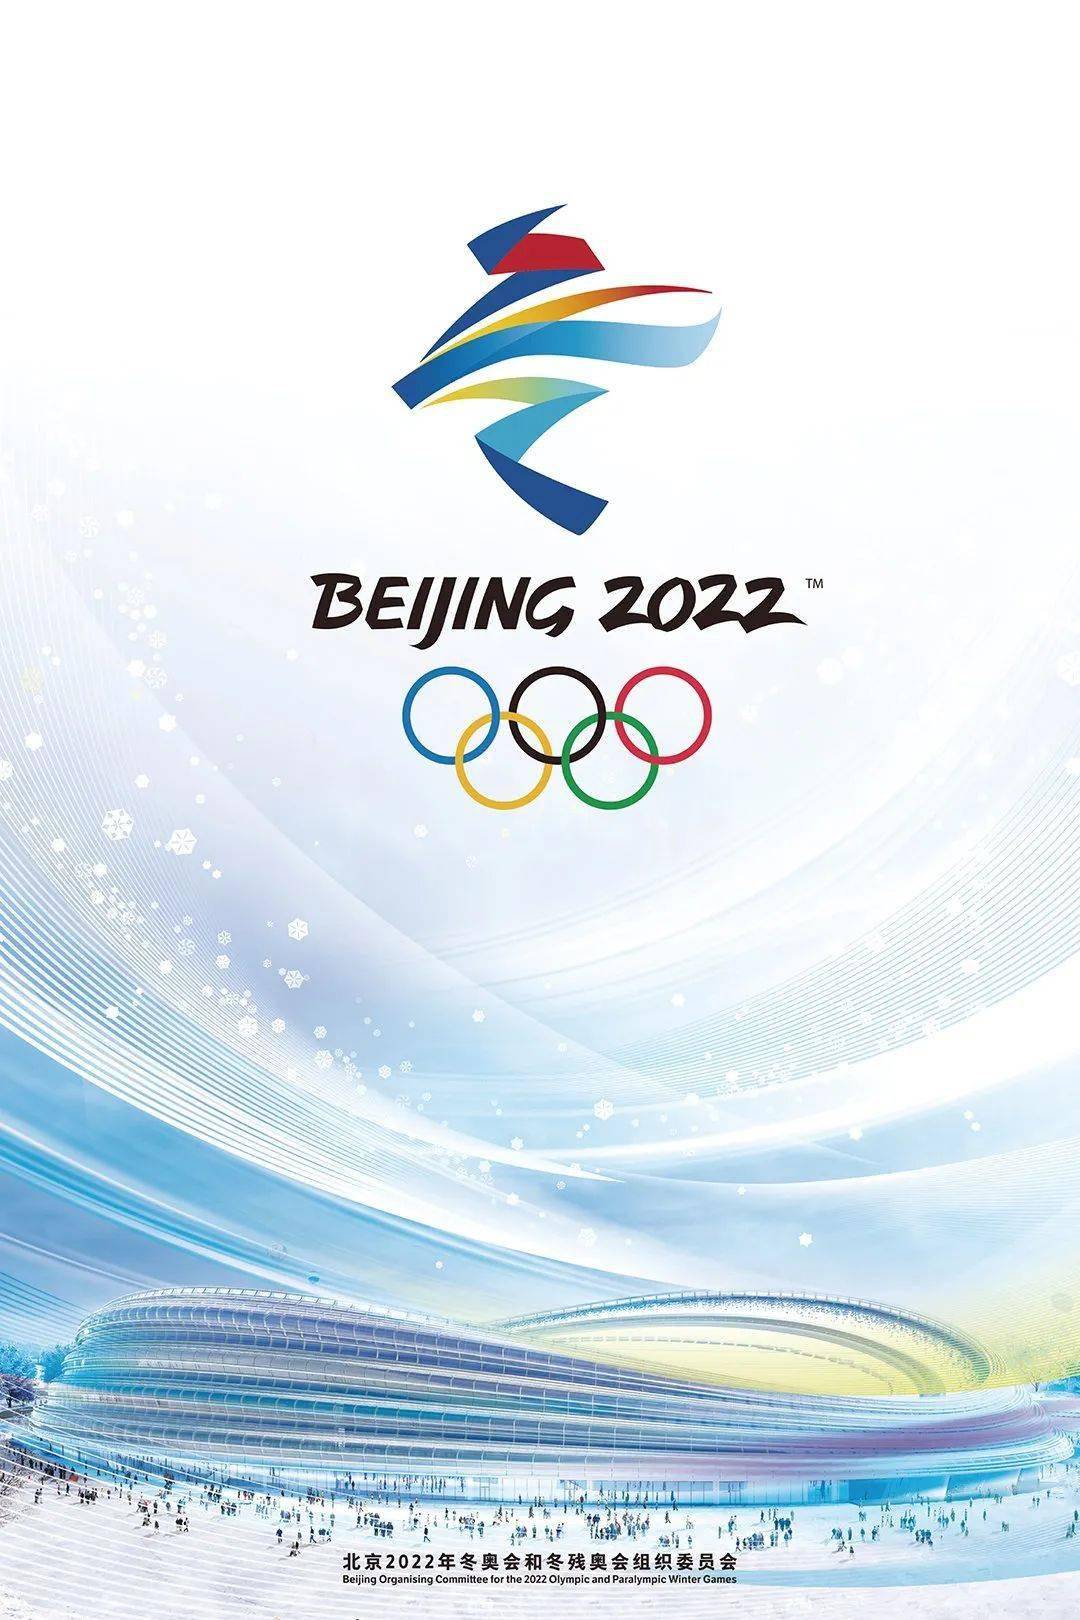 北京冬奥会会徽,设计上汲取了中国书法与剪纸的特点